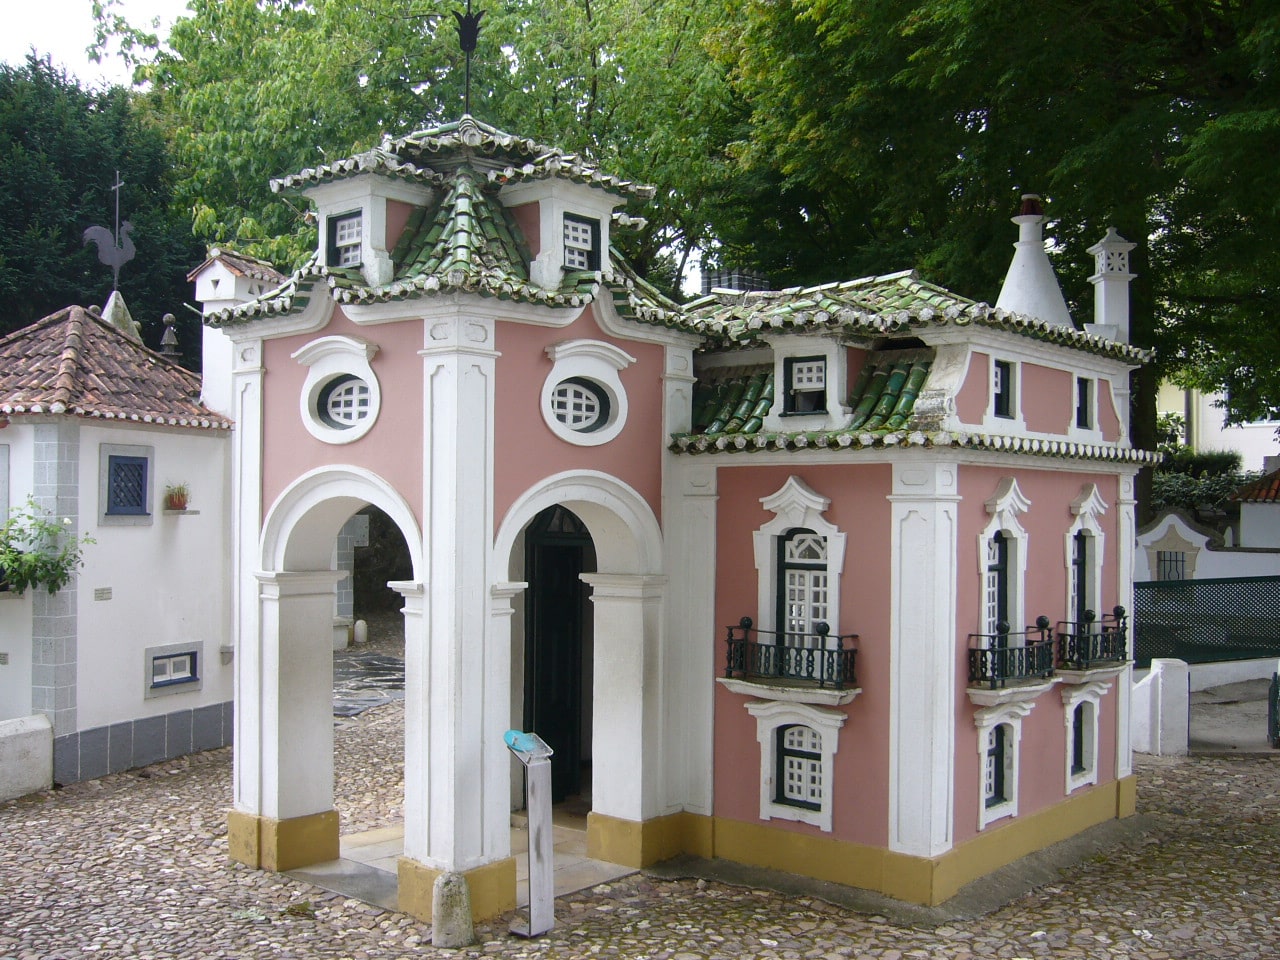 El increíble parque temático dos pequenitos de Portugal ...